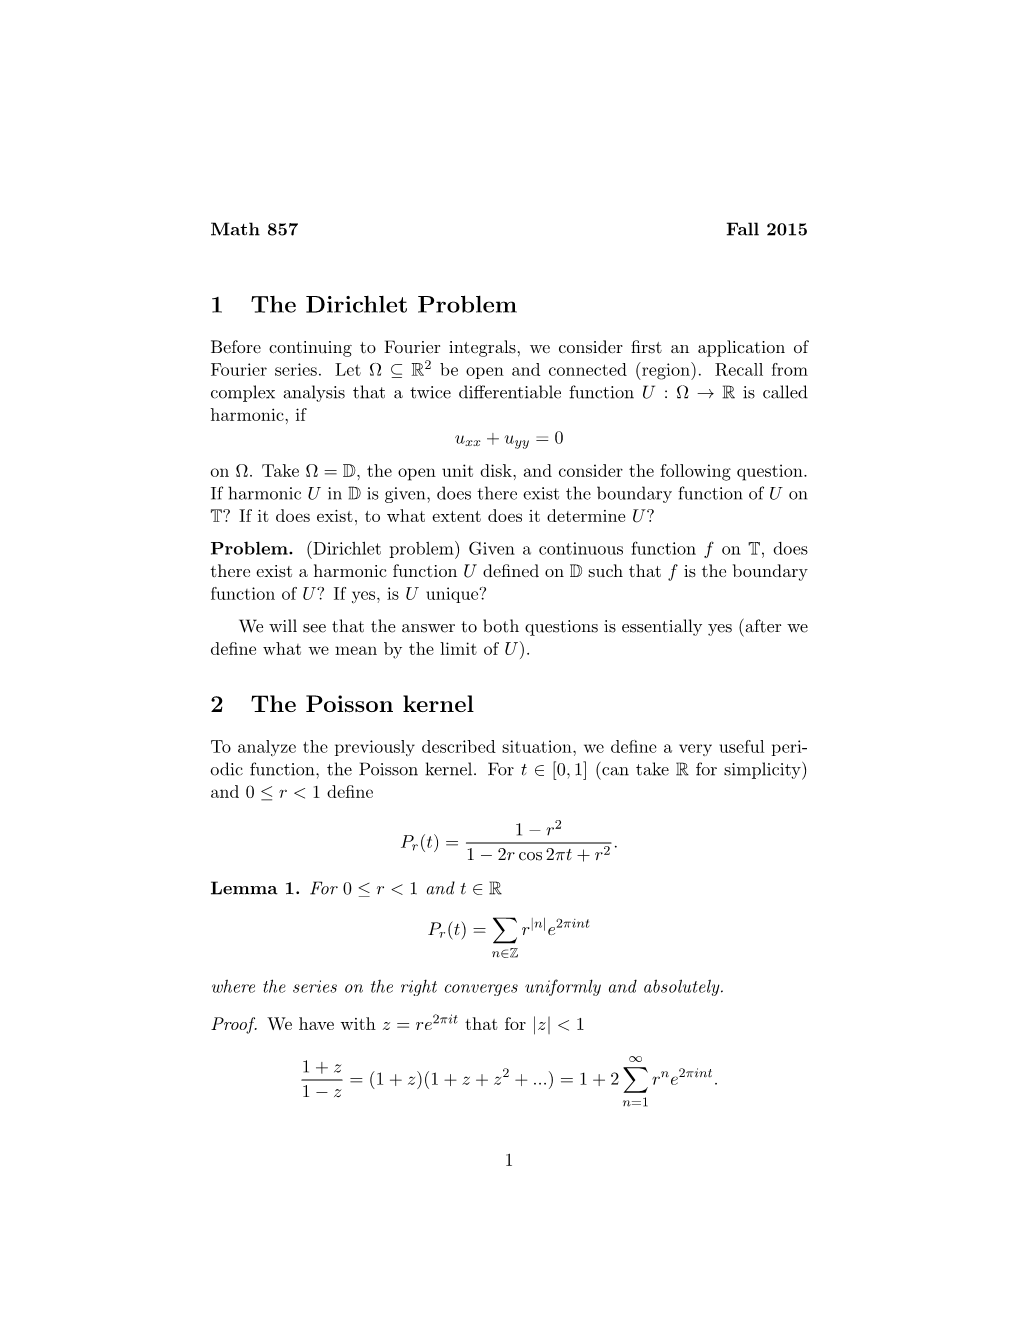 1 the Dirichlet Problem 2 the Poisson Kernel